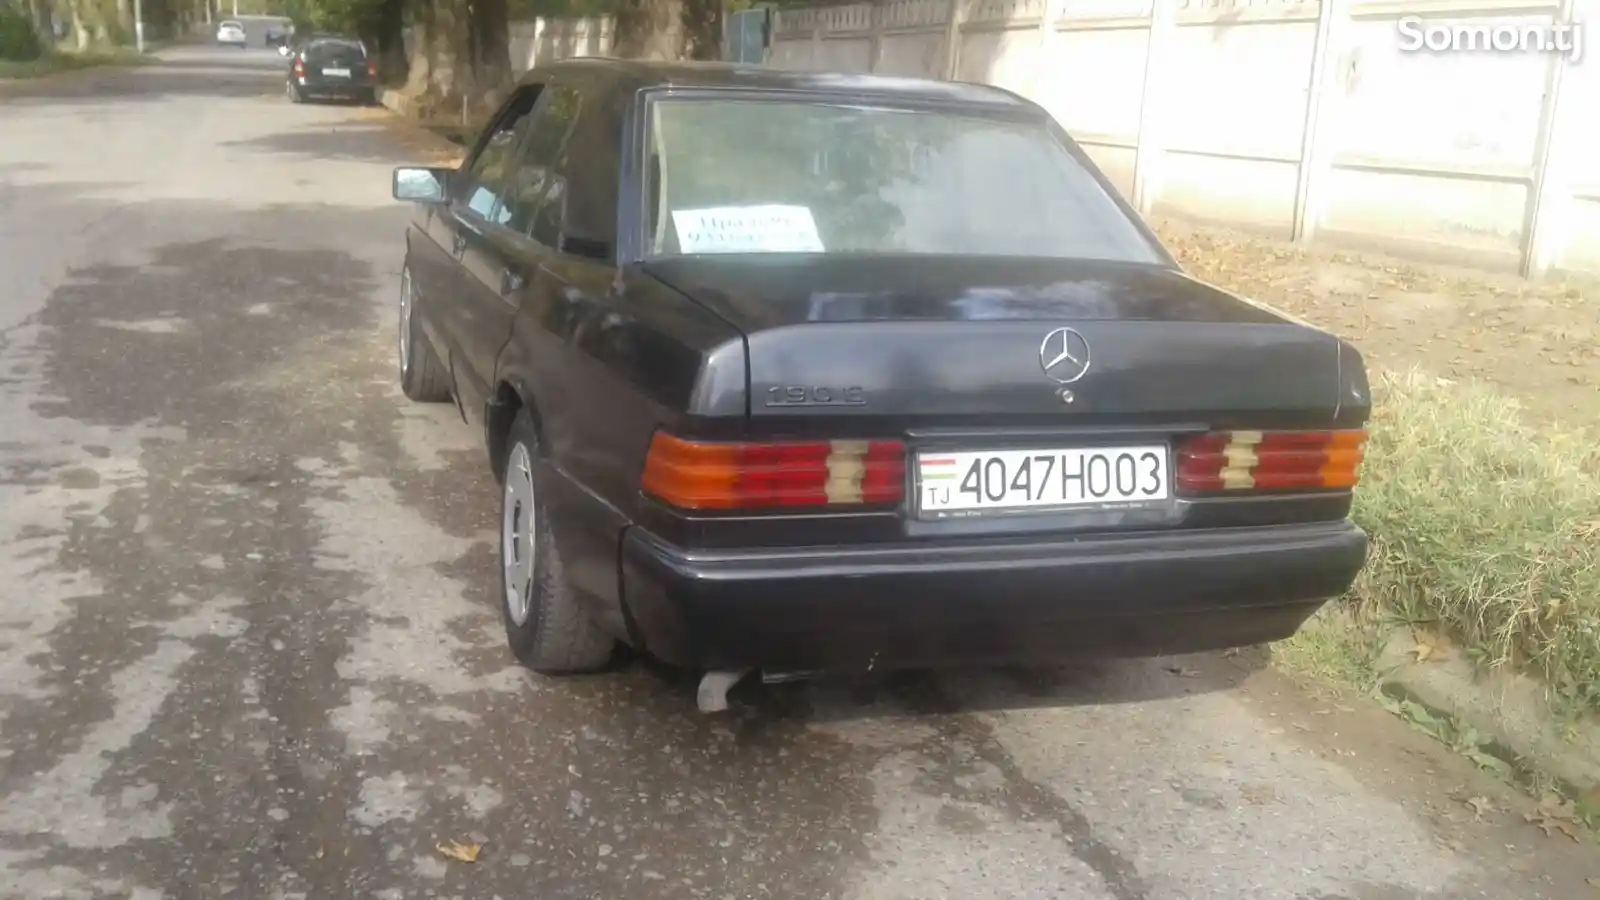 Mercedes-Benz C class, 1992-1